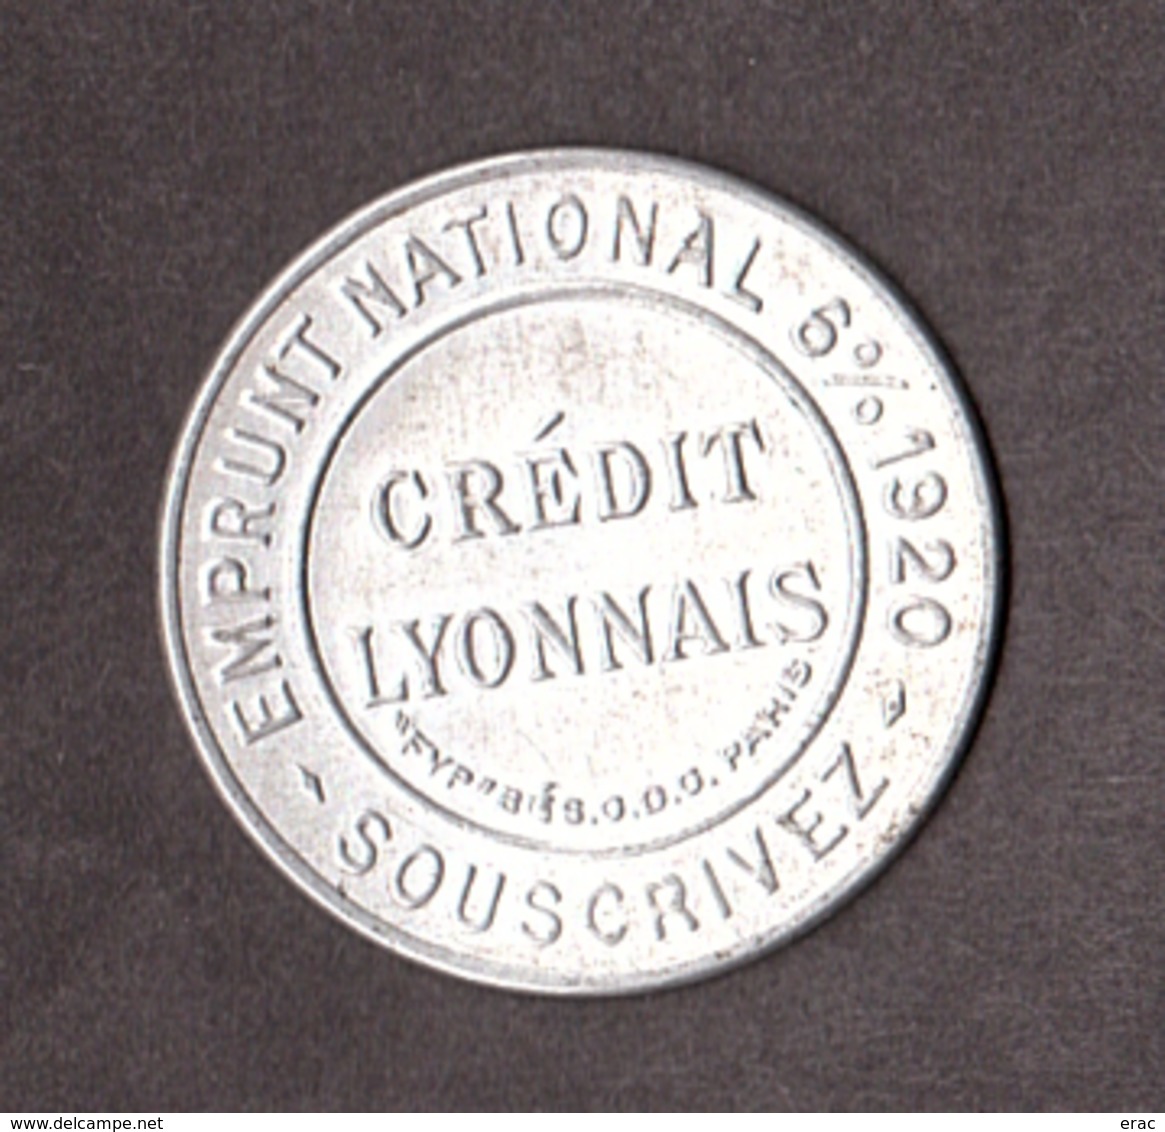 Timbre-monnaie - Crédit Lyonnais Emprunt National 6% 1920 - Semeuse N° 137 - Monétaires / De Nécessité